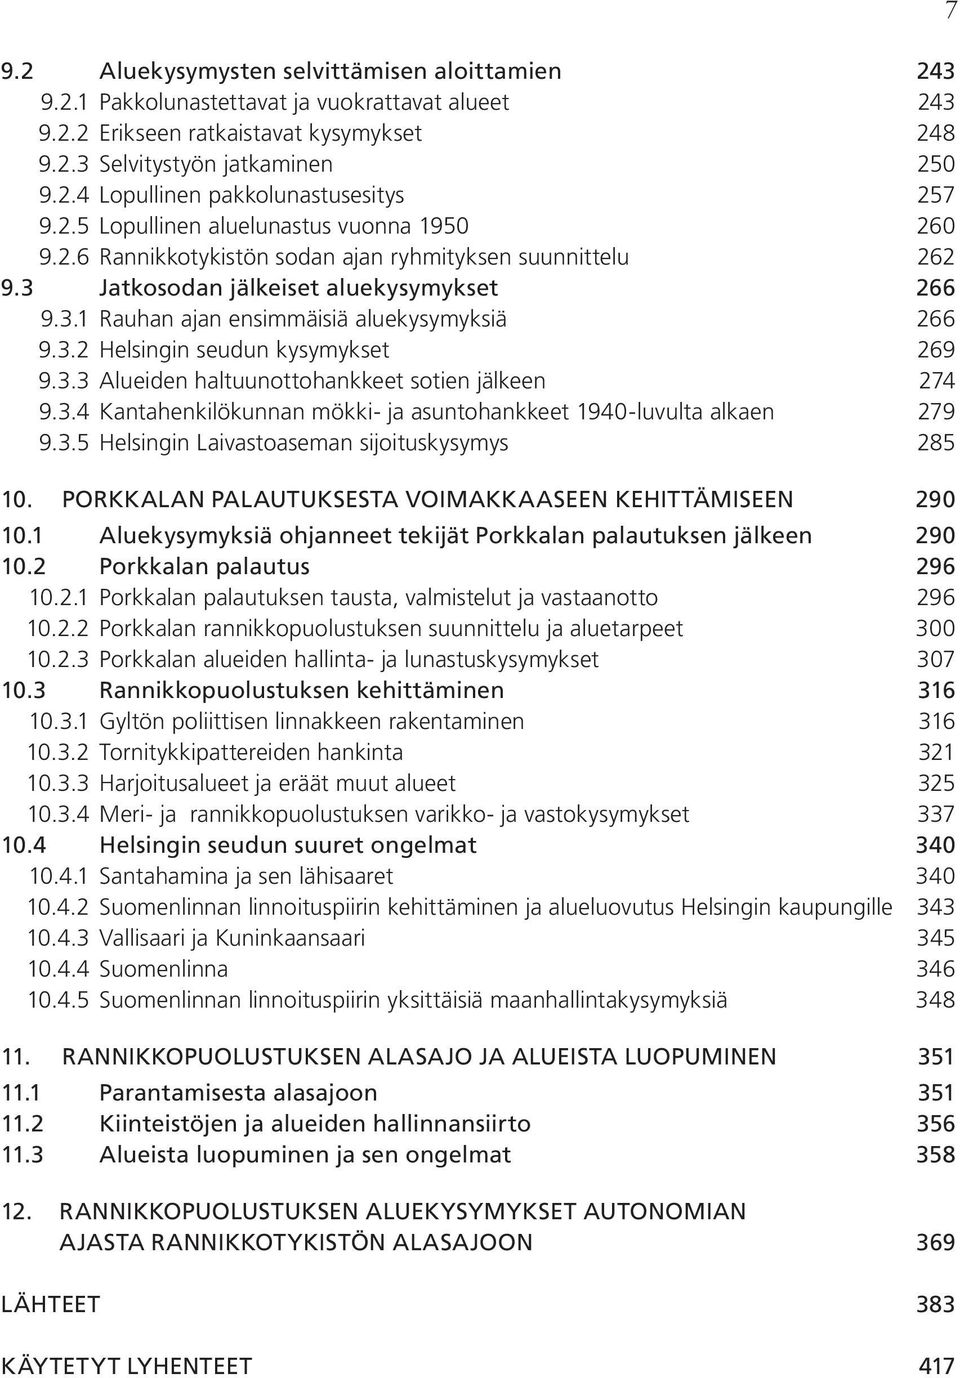 3.2 Helsingin seudun kysymykset 269 9.3.3 Alueiden haltuunottohankkeet sotien jälkeen 274 9.3.4 Kantahenkilökunnan mökki- ja asuntohankkeet 1940-luvulta alkaen 279 9.3.5 Helsingin Laivastoaseman sijoituskysymys 285 10.